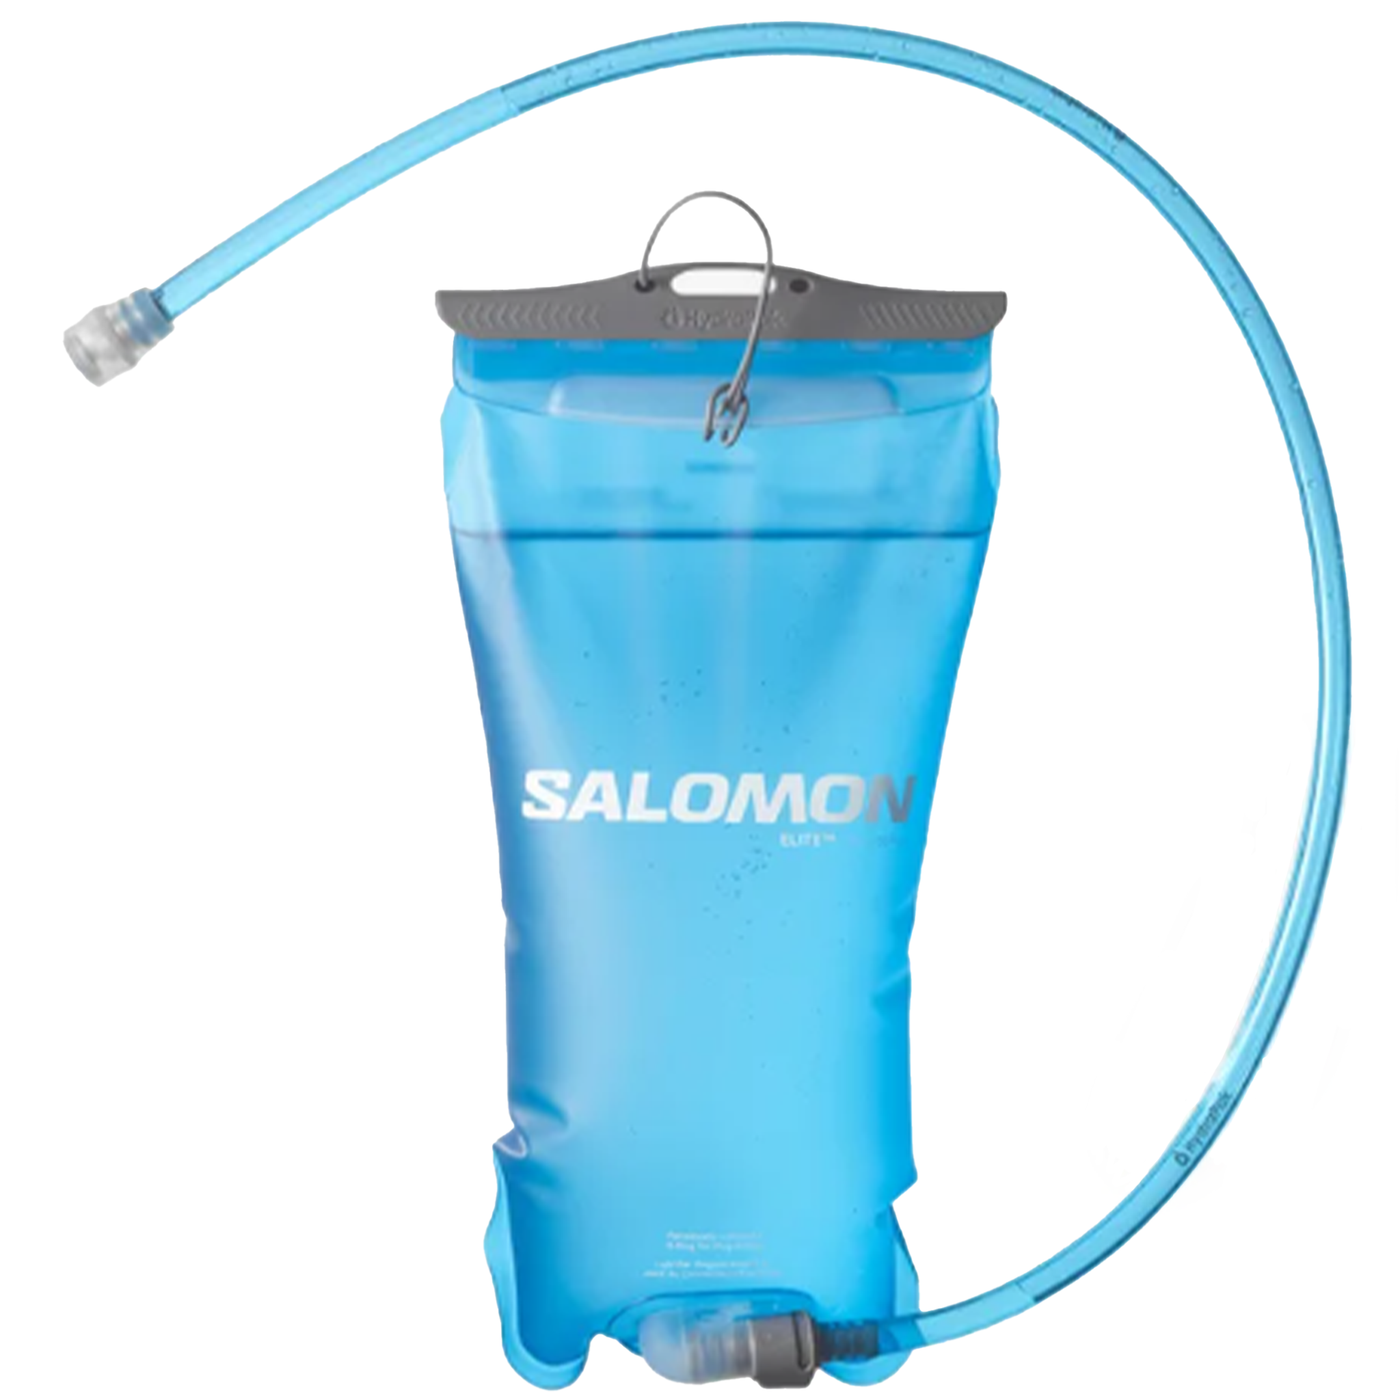 Salomon Soft Reservoir 1.5L - Clear Blue